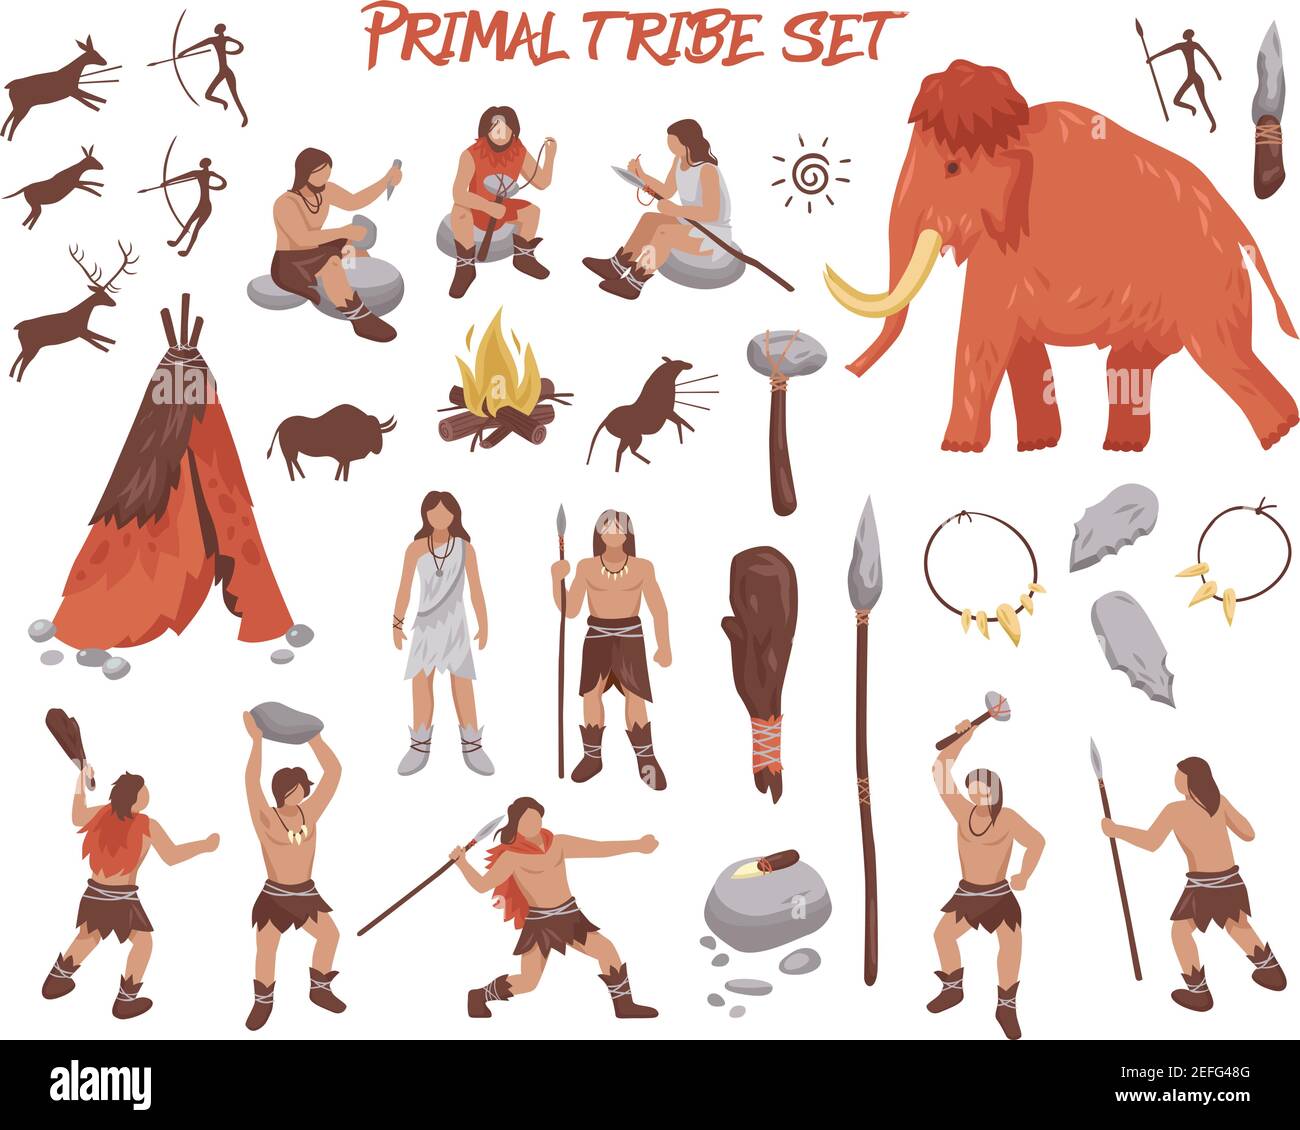 Le icone delle persone delle tribù primali sono impostate con armi e animali piatti illustrazione vettoriale isolata Illustrazione Vettoriale